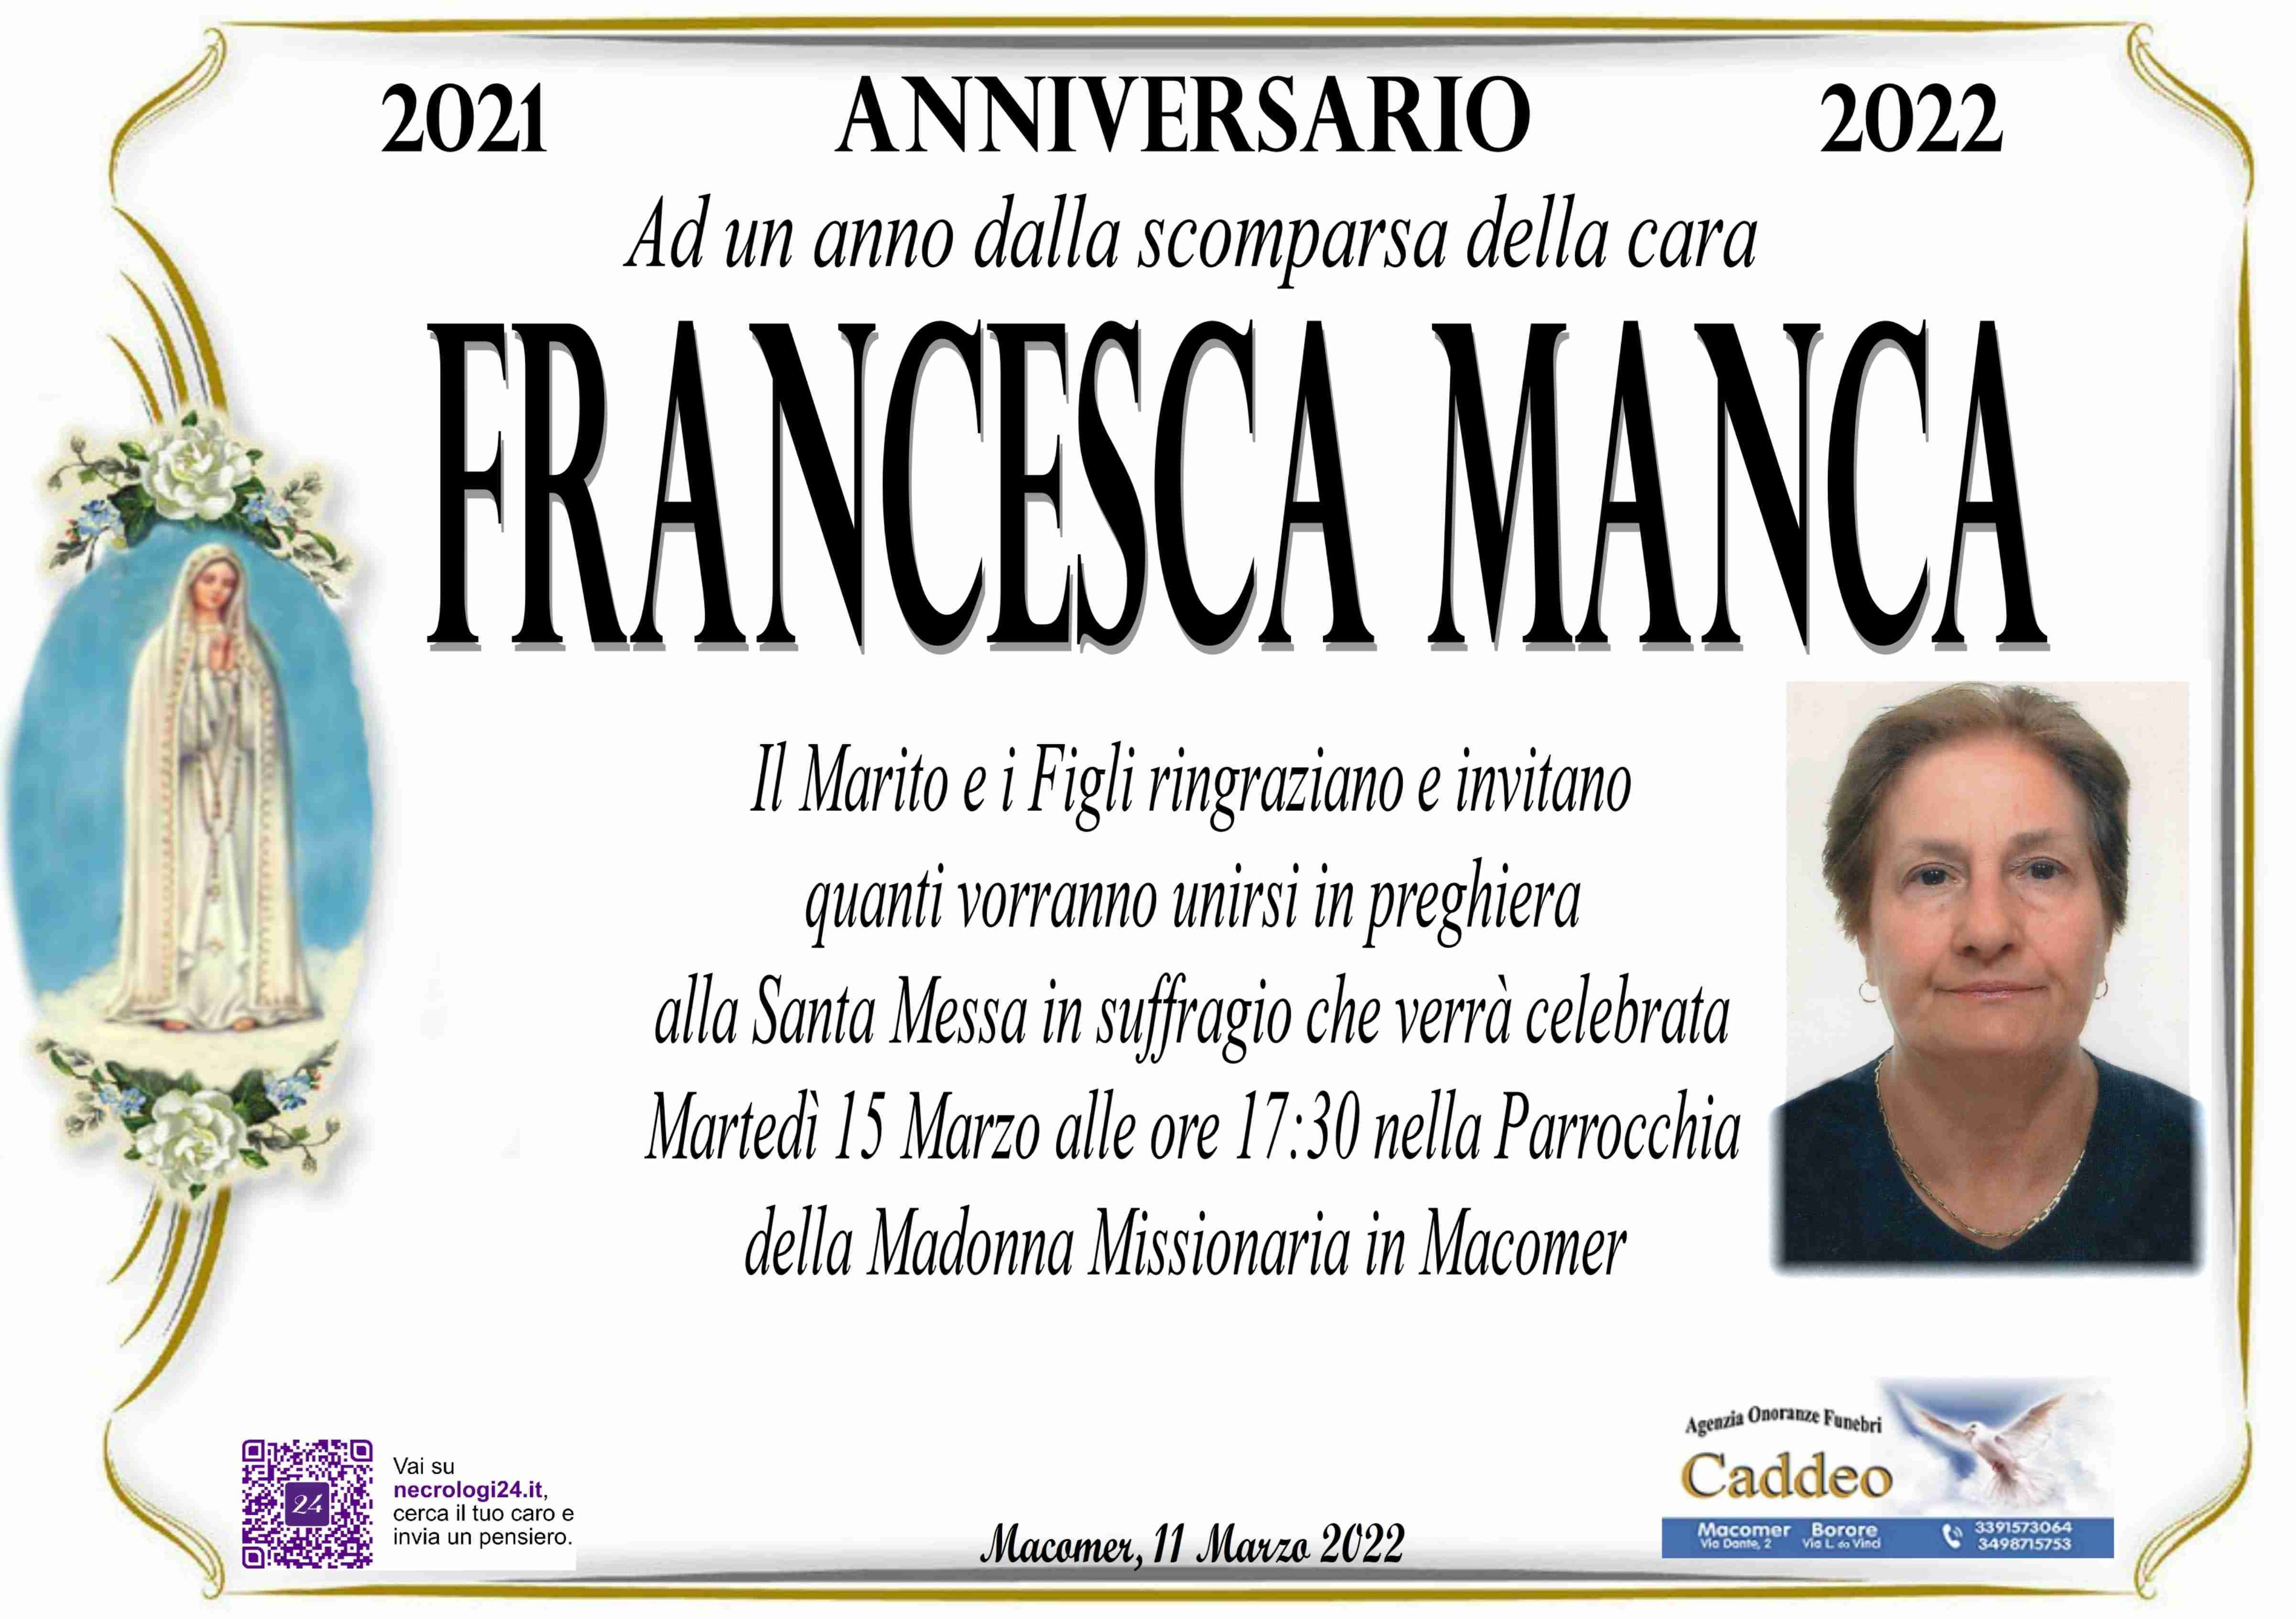 Francesca Manca